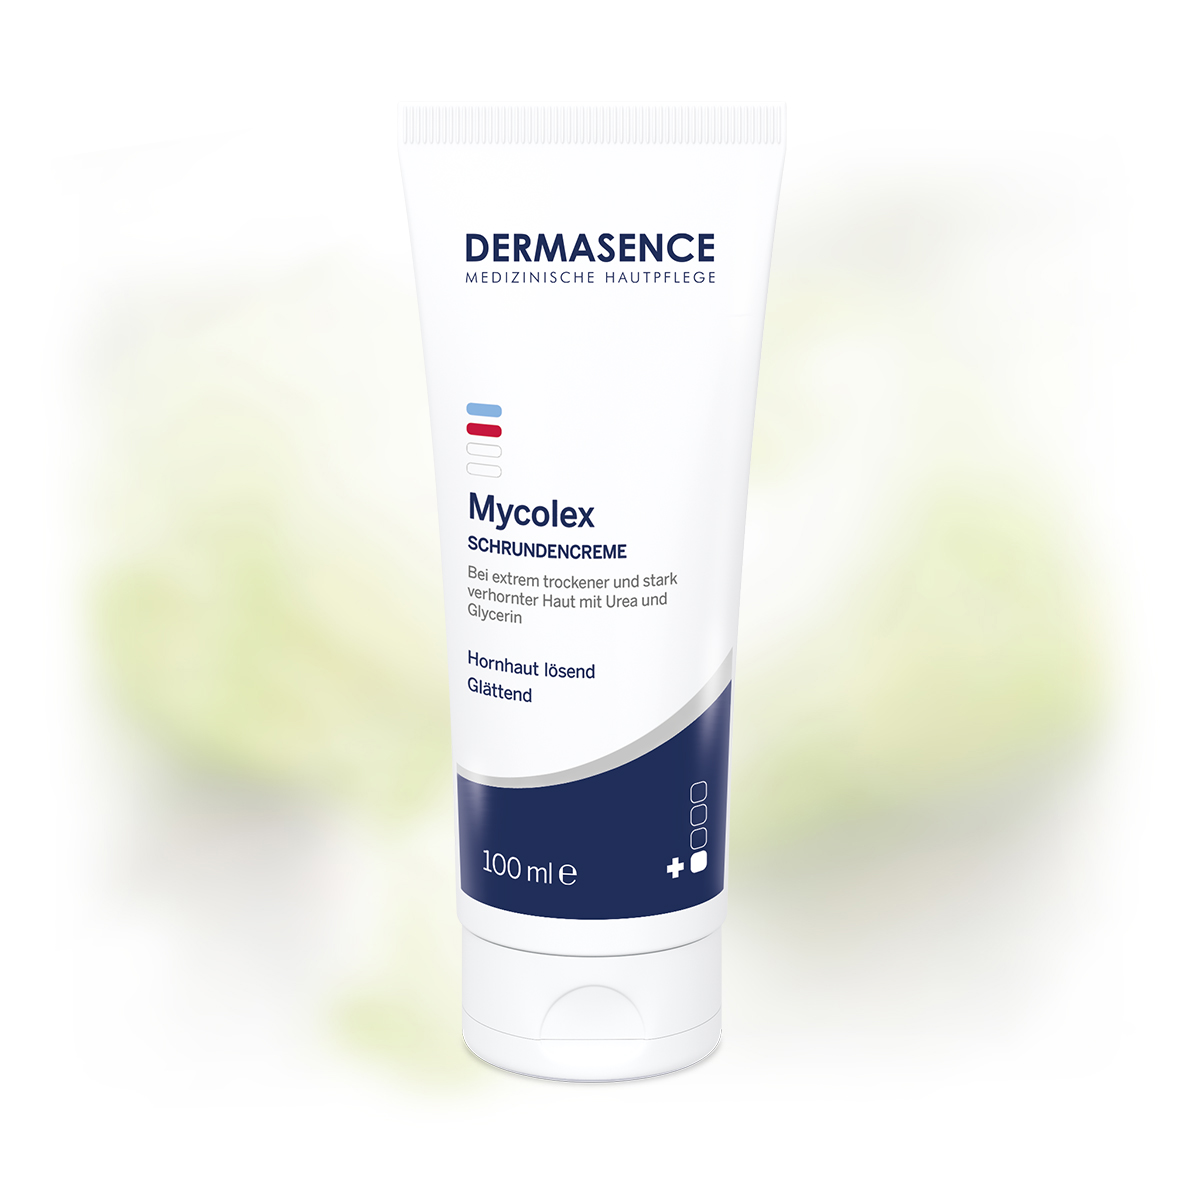 DERMASENCE Mycolex Cracked skin cream, 100 ml